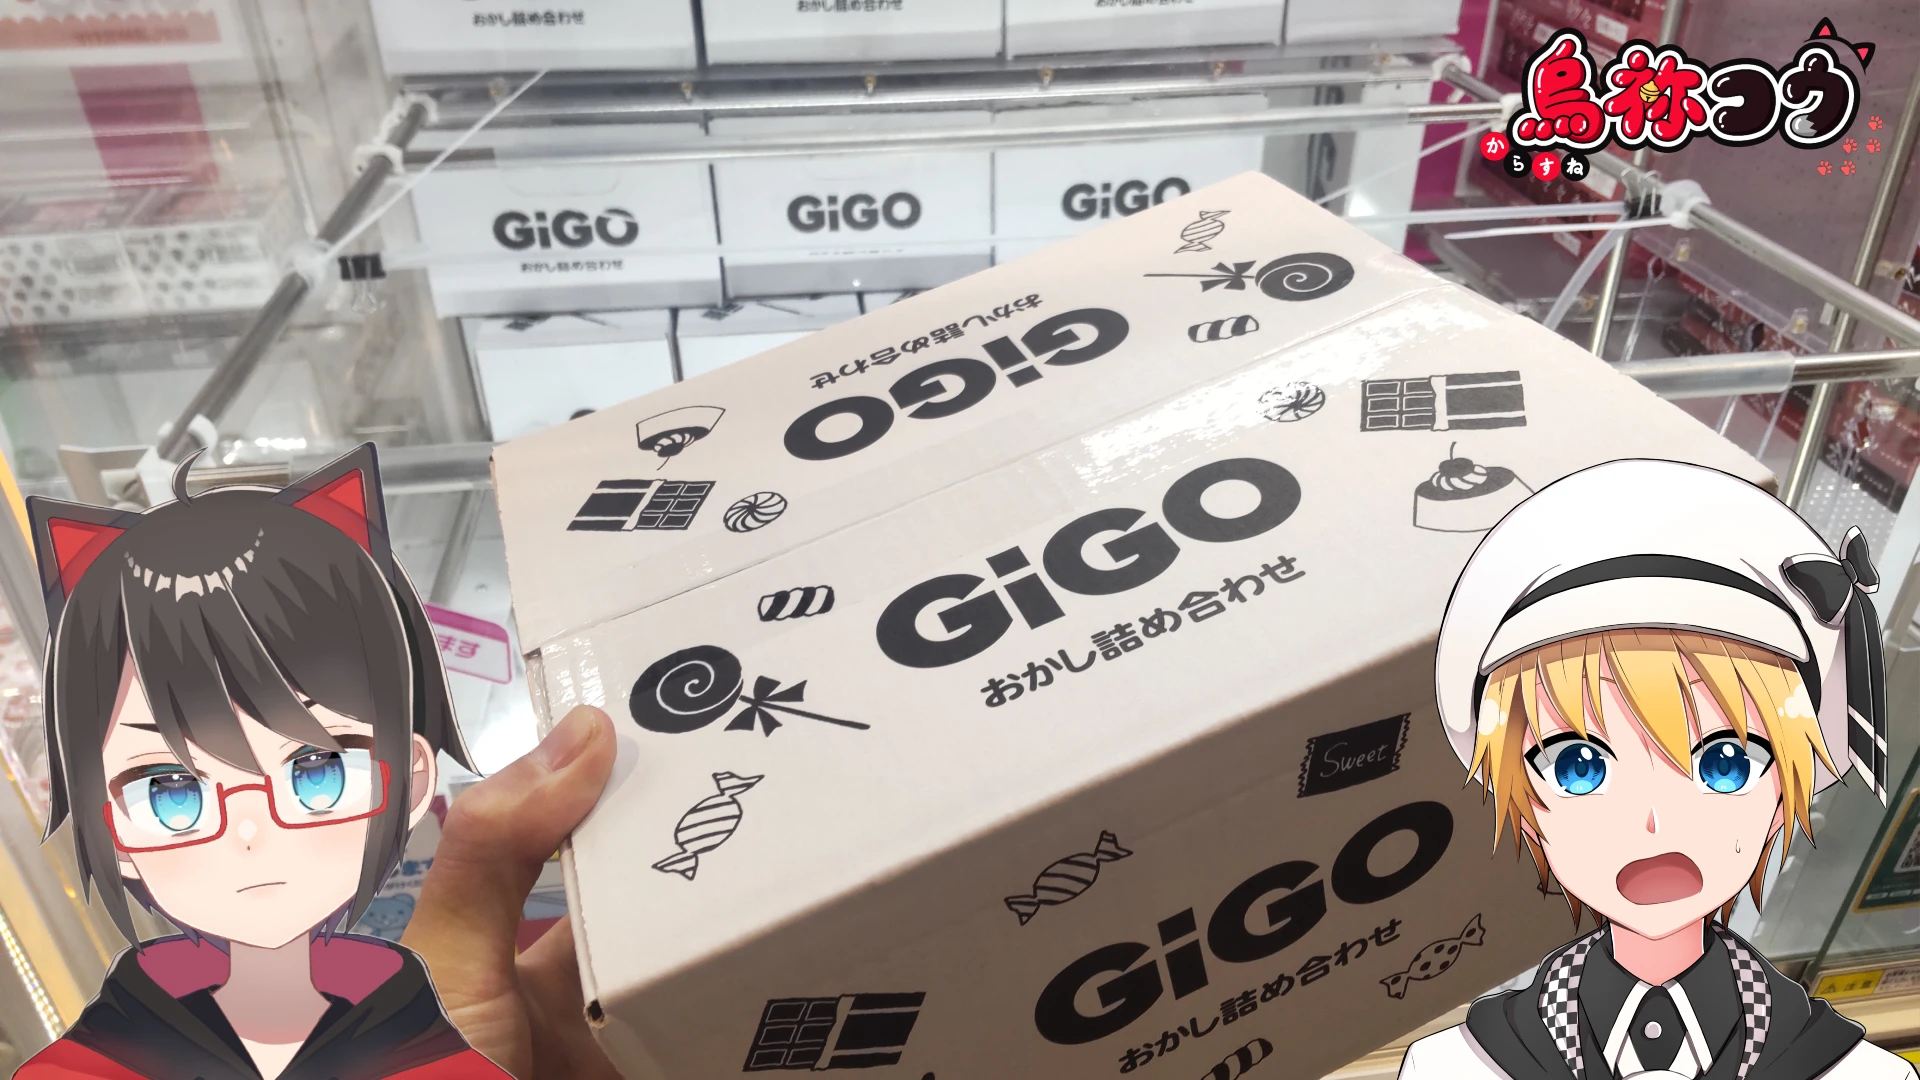 GiGO でゲットしたおかし詰め合わせ BOX を撮影した写真です